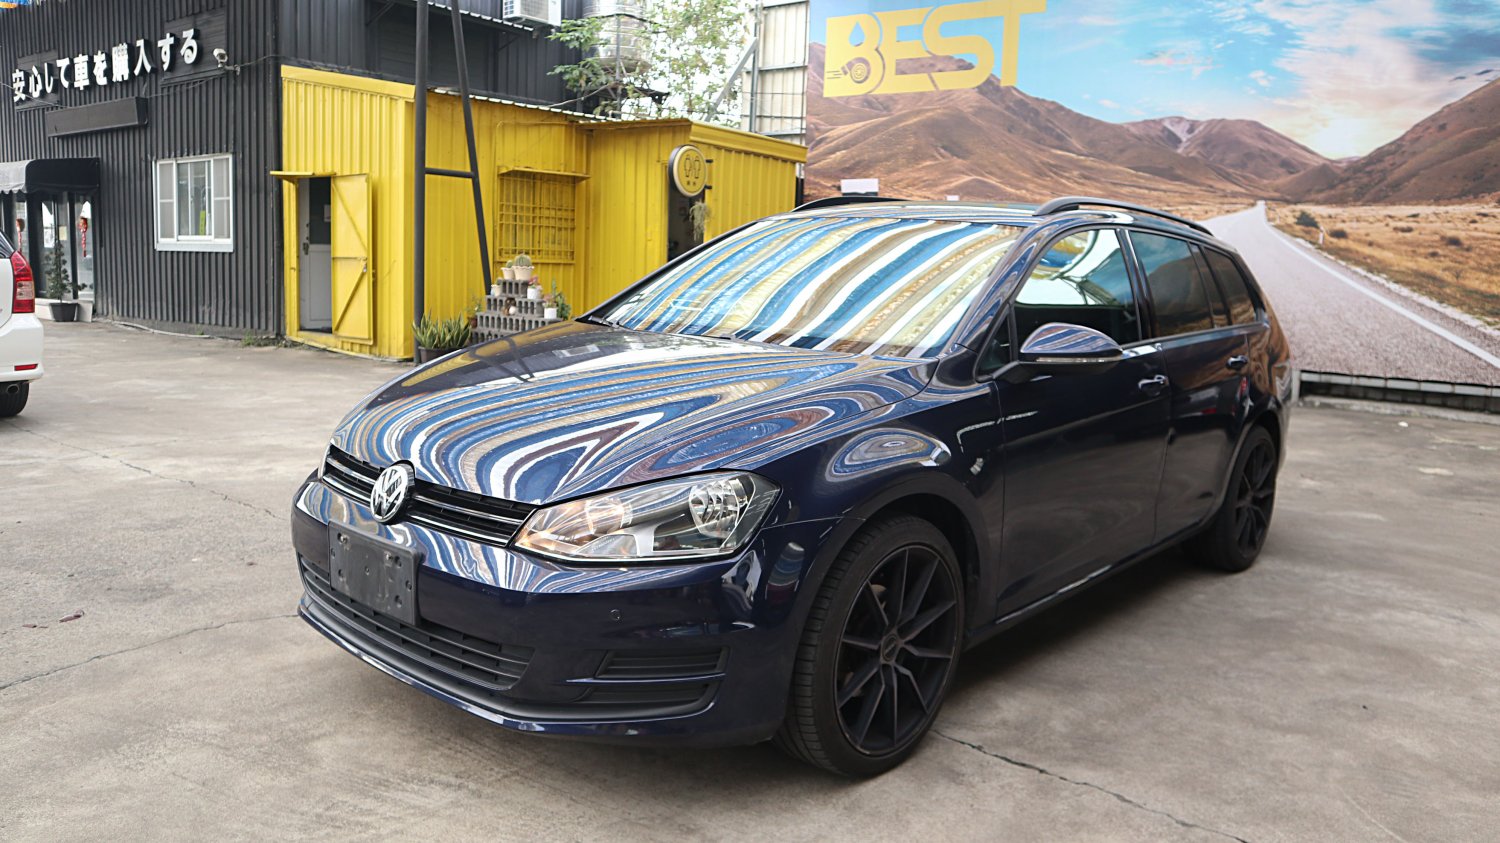 VW 福斯 ／ Golf ／ 2014年 ／ 2014年 VW Golf  藍色 福斯中古車 ／ 九州欣旺汽車 (台南)